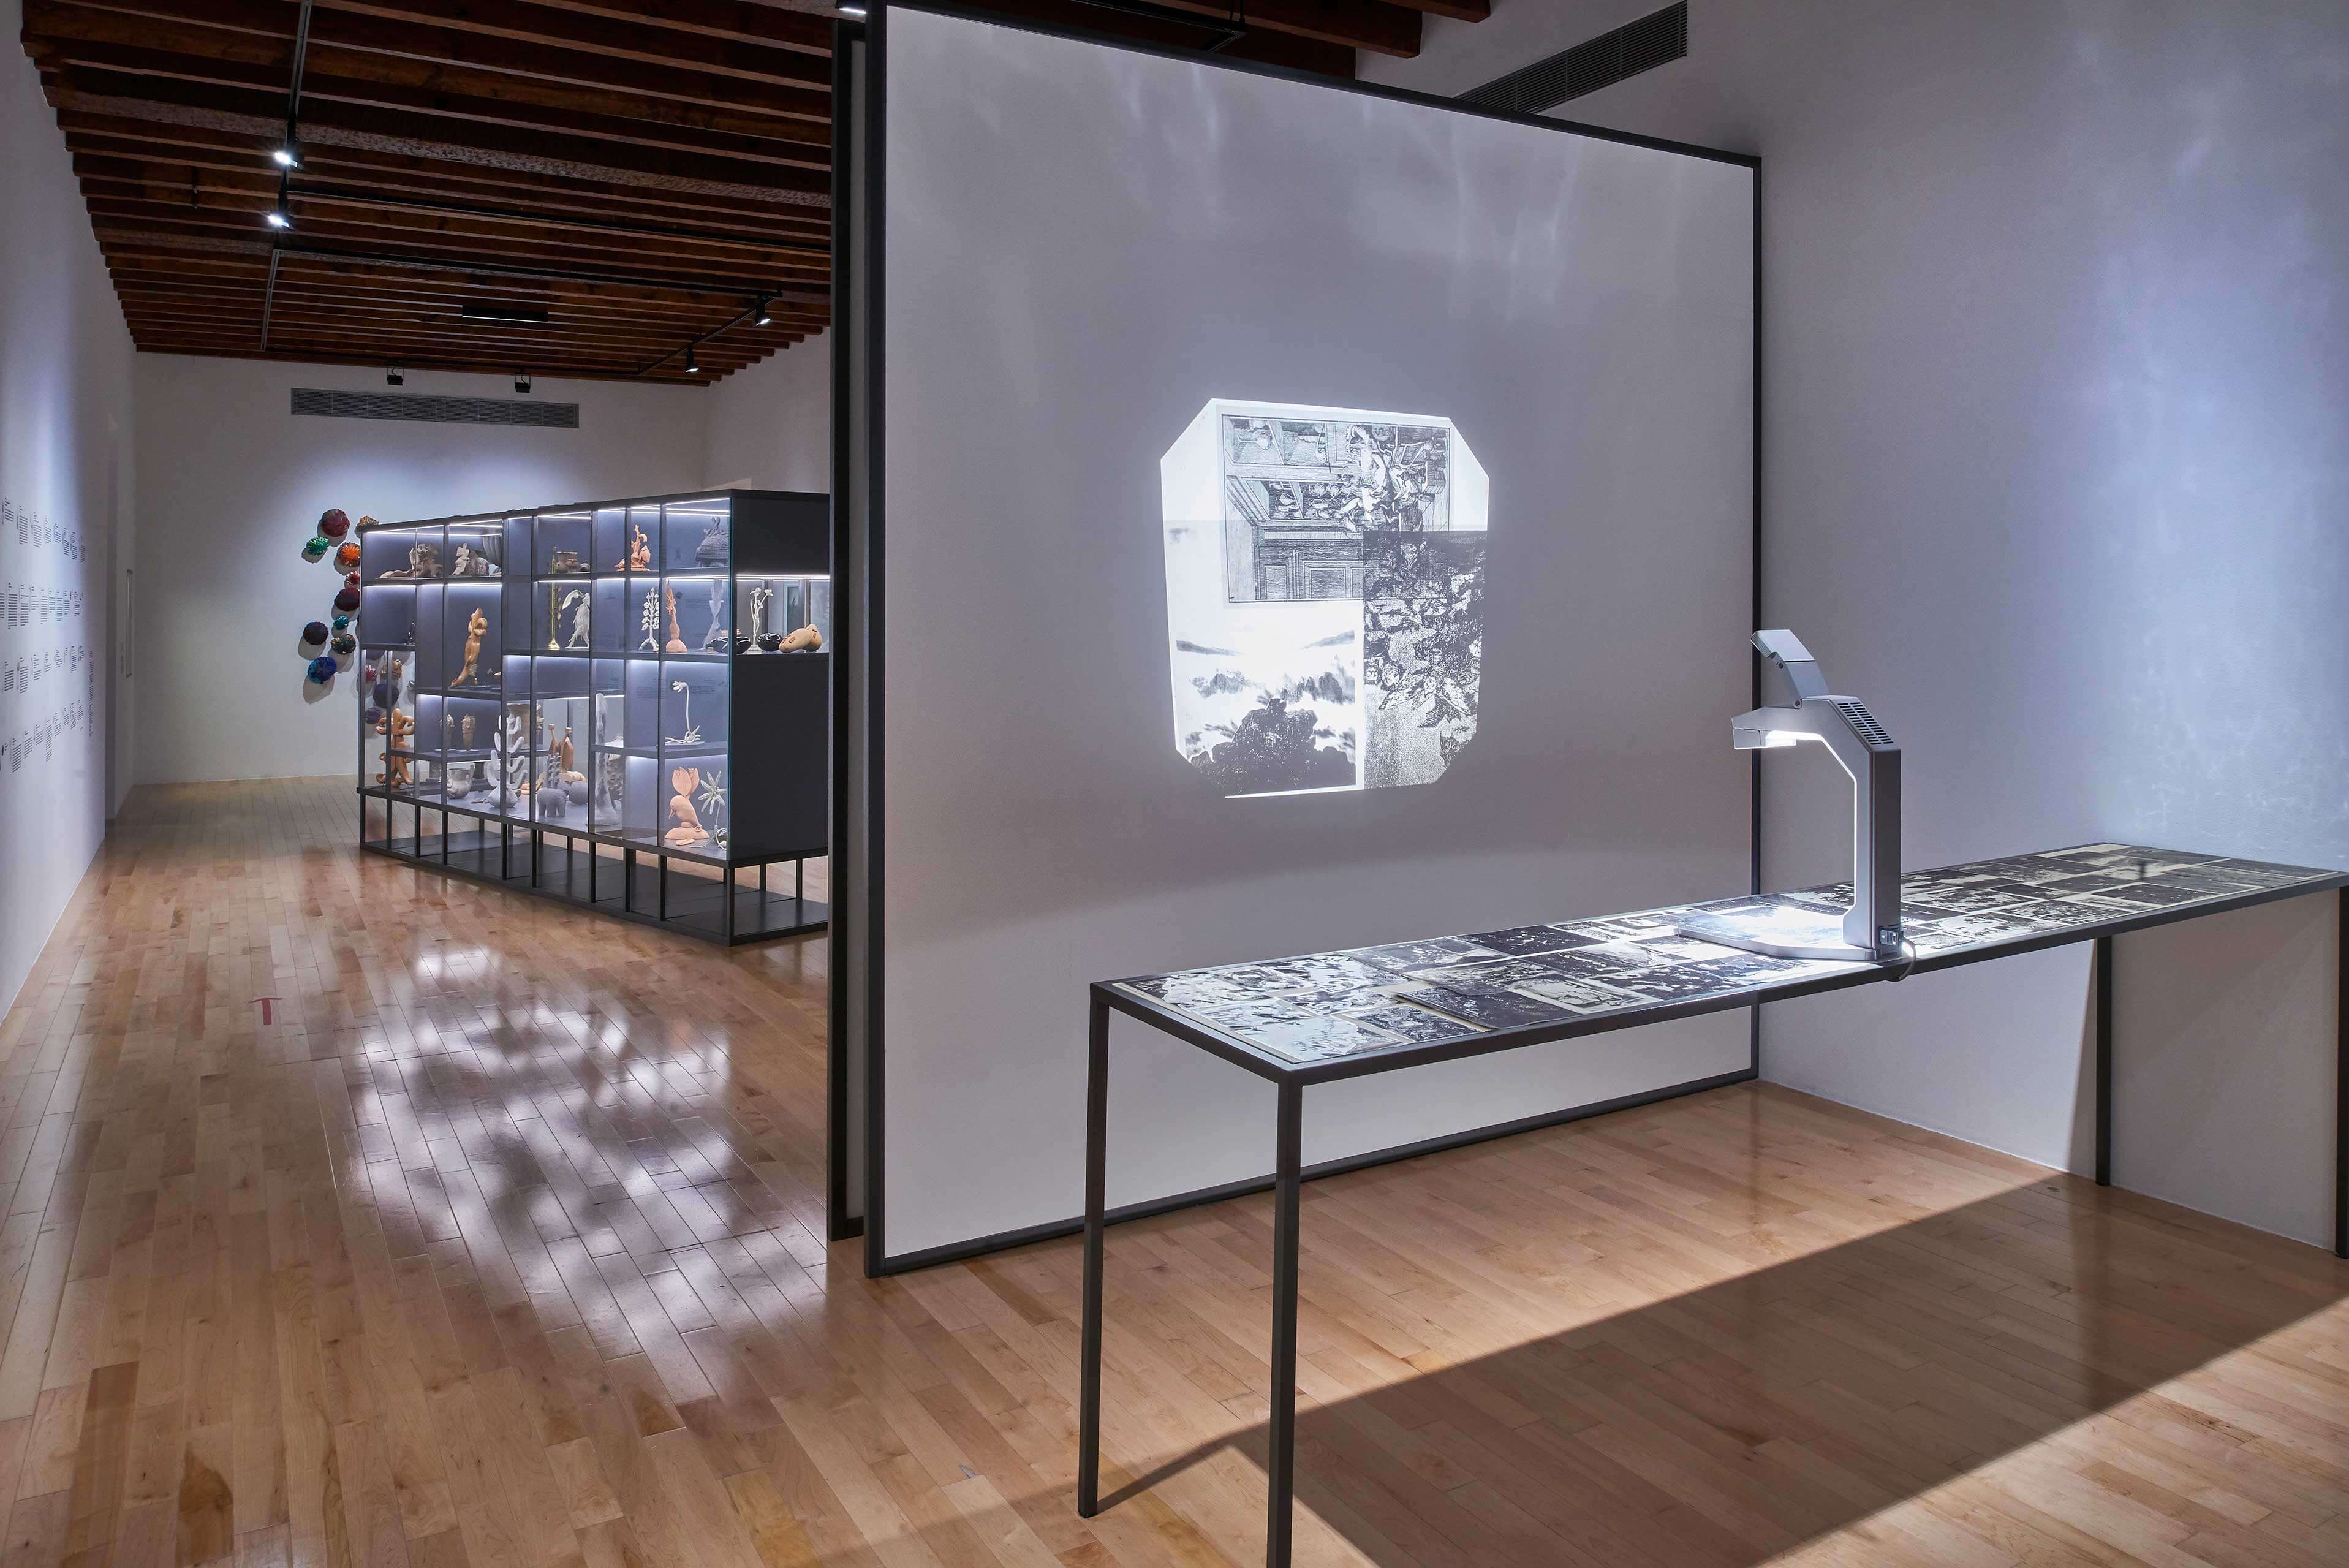 Desaparecer, mostrar, fragmentar, oscurecer | El tiempo en las cosas II. Salas de Arte Contemporáneo | Museo Amparo, Puebla